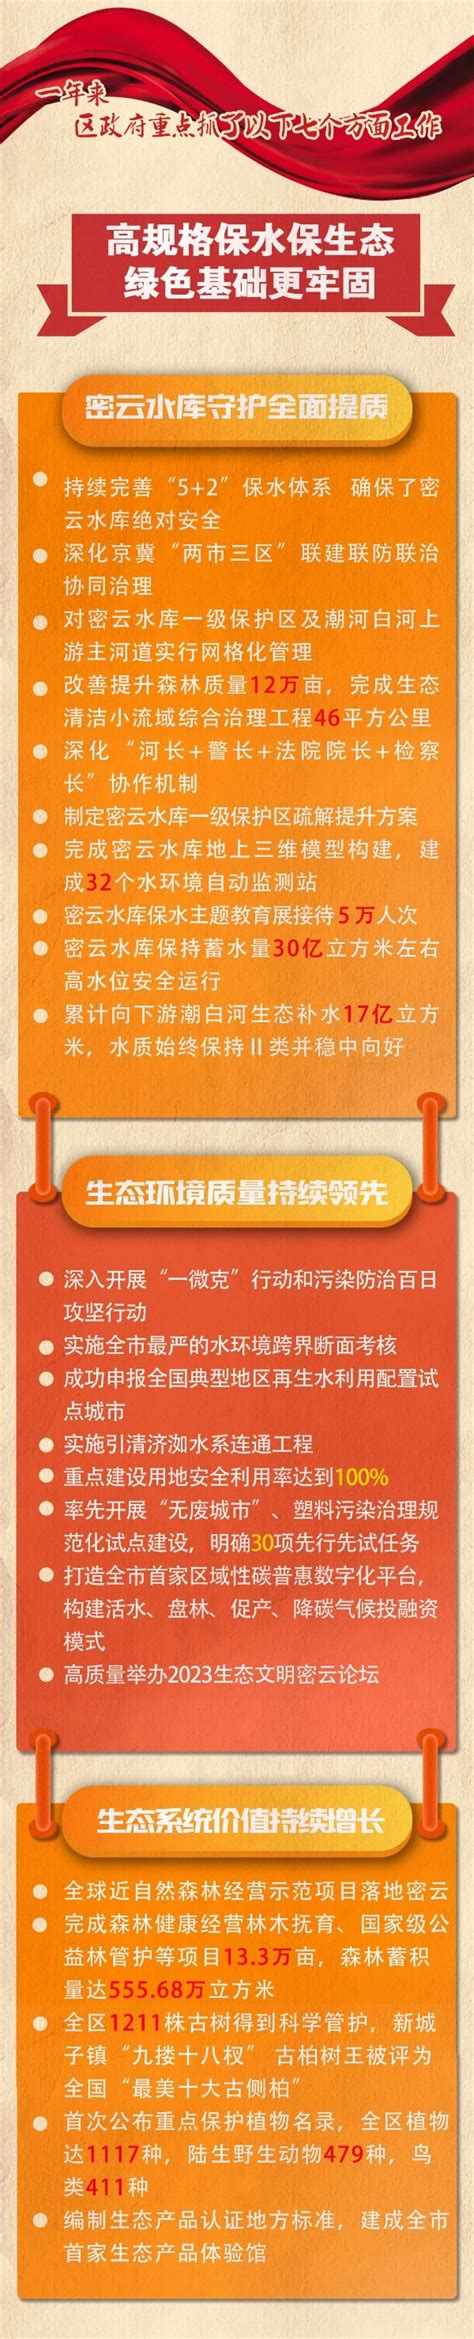 密云分区规划草案2017年-2035年(图解)- 北京本地宝